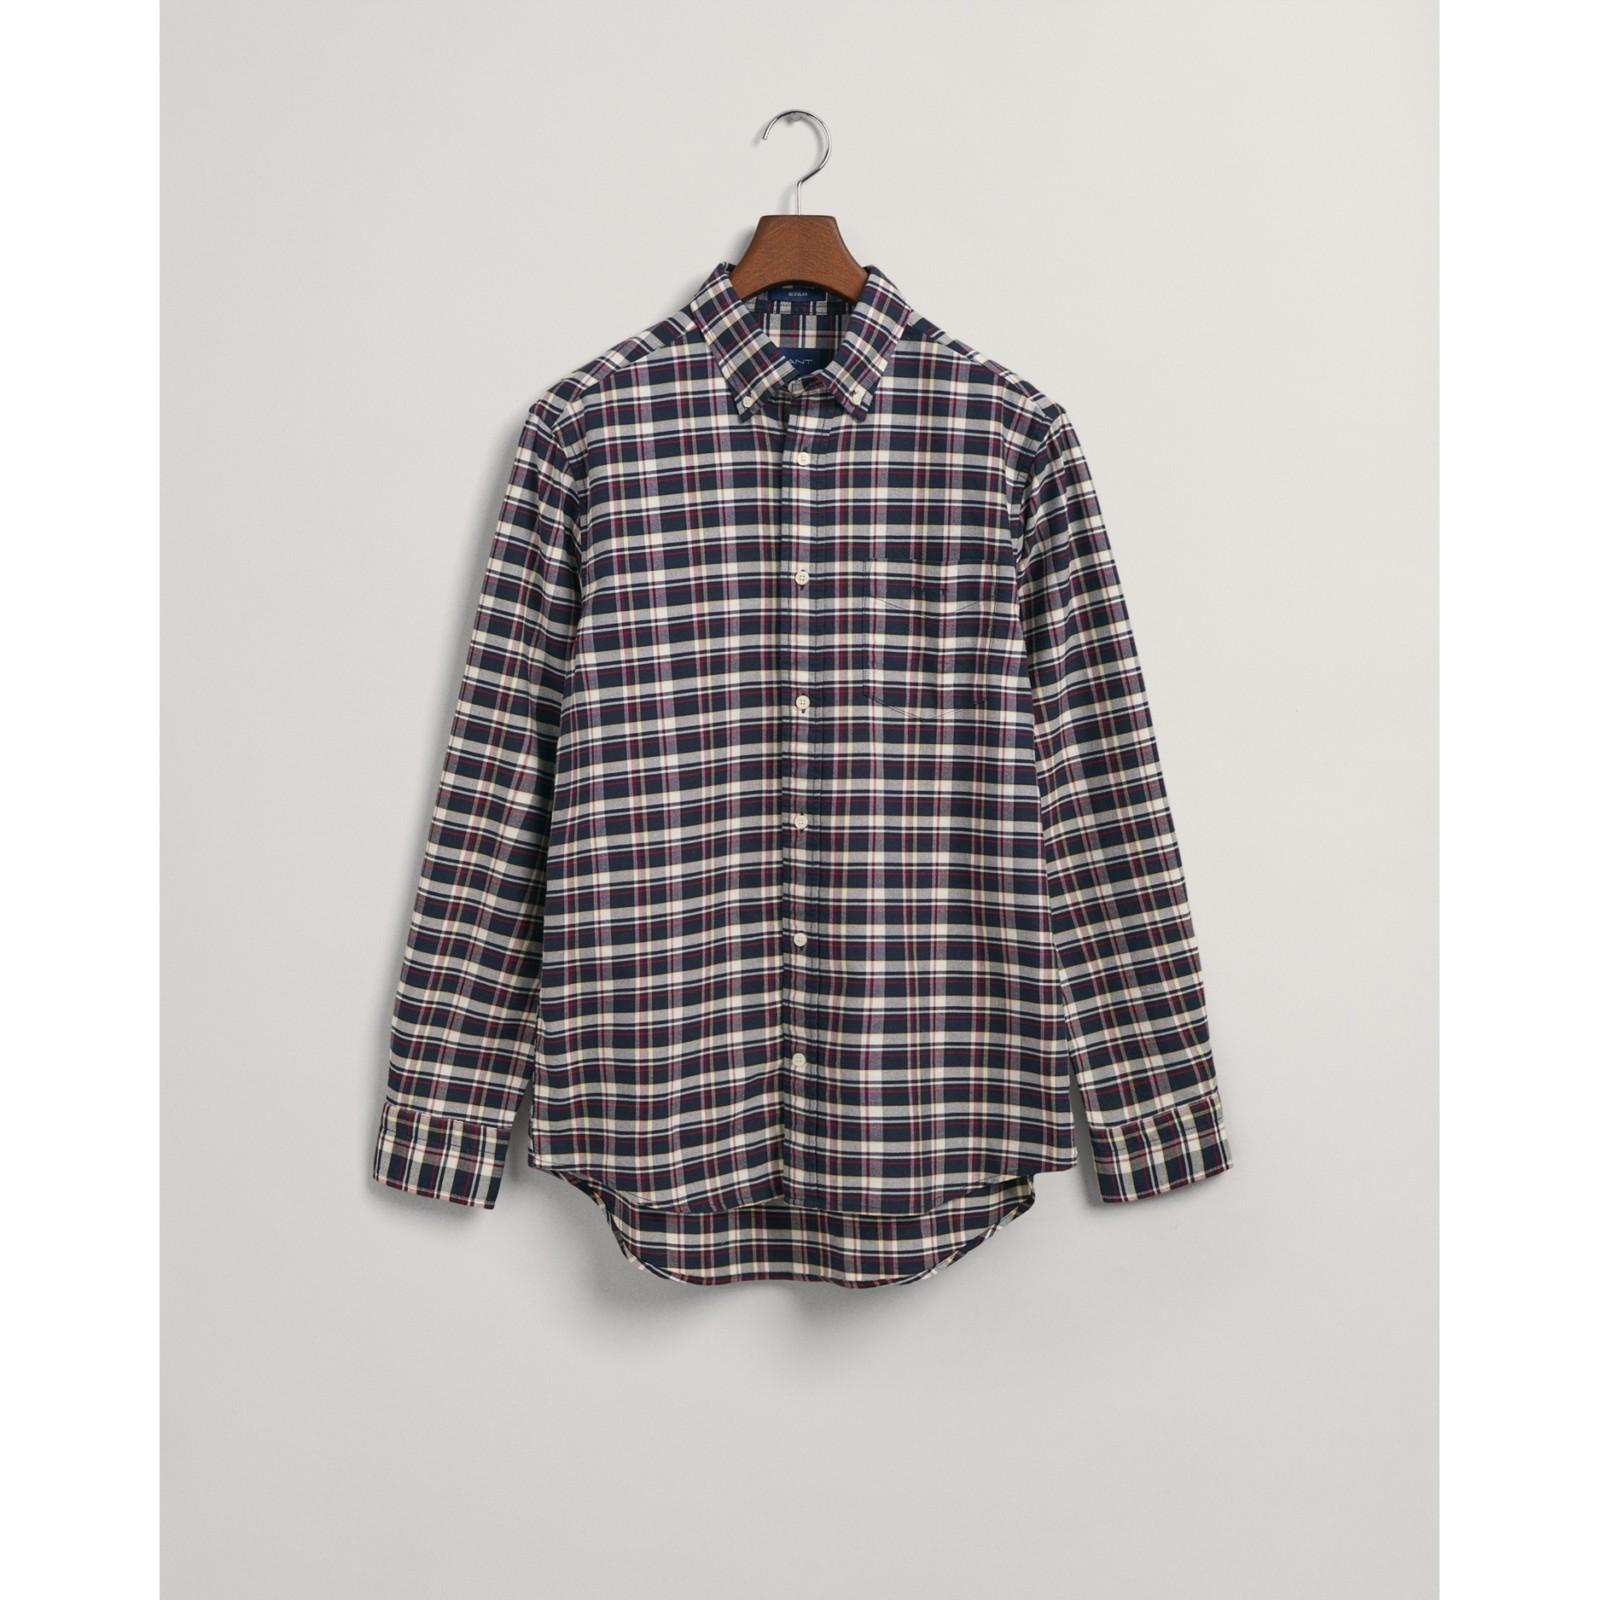 Gant_reg-oxford-check-shirt_tummansininen_202204-3230011-433